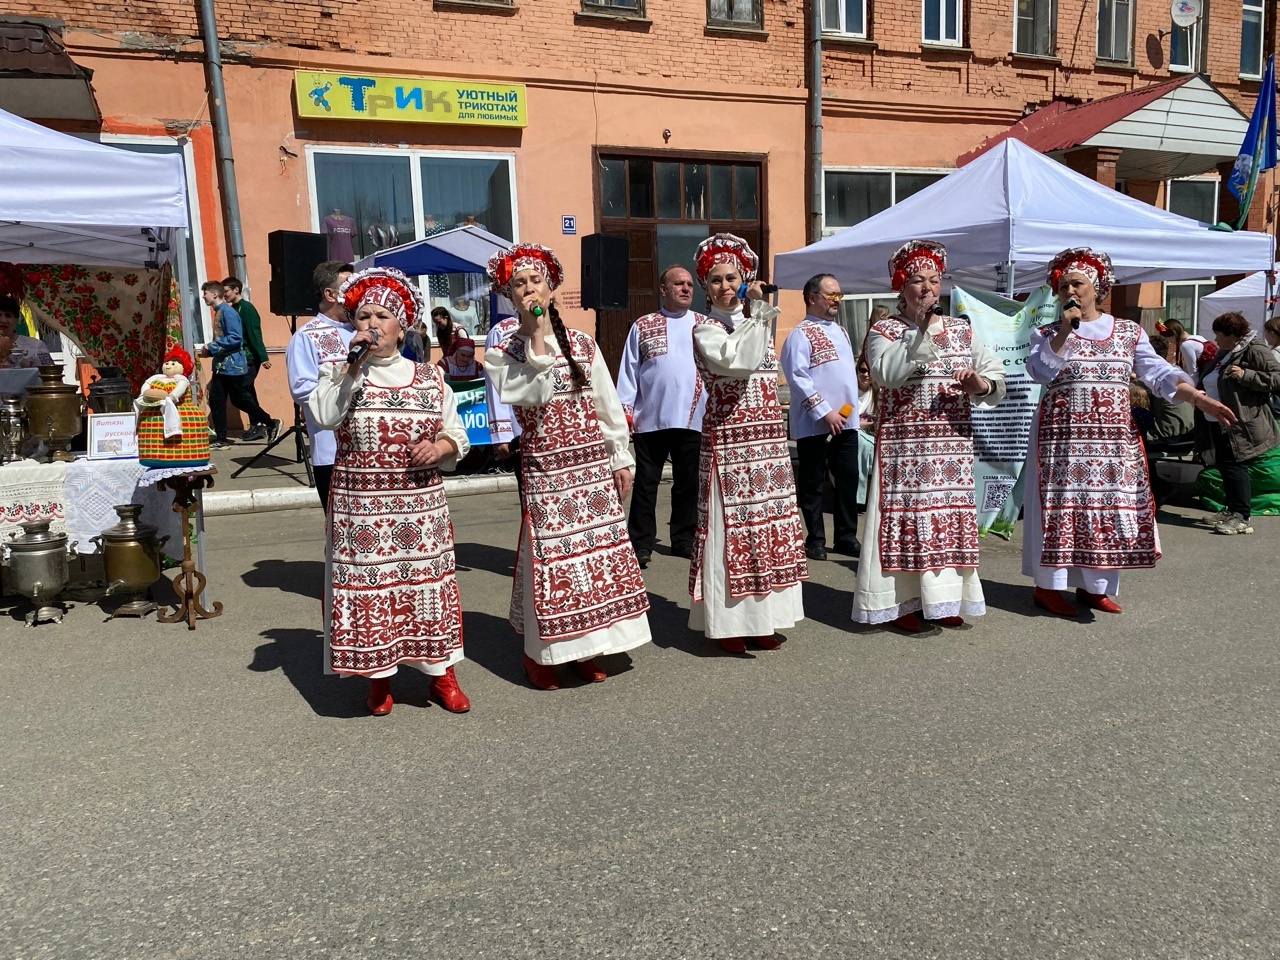 Кирово-Чепецкий район поучаствовал в открытии пешеходной Спасской 19 мая